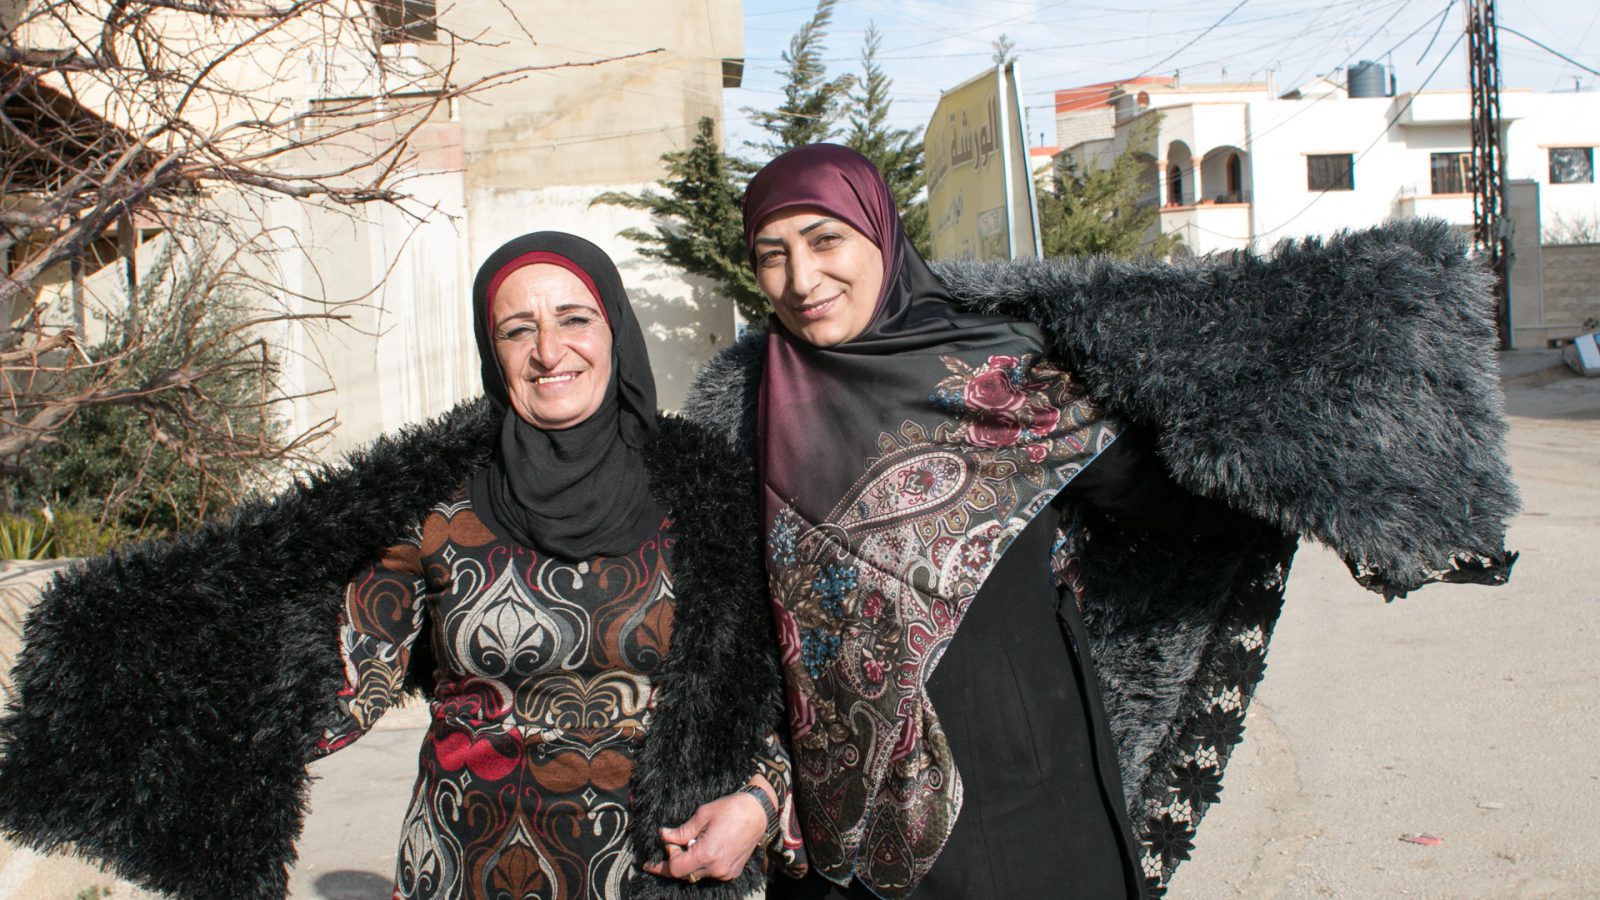 Souhayla Aamer et sa voisine, toutes deux bénéficiaires du projet Dawric financé par l’UE, posent avec leurs créations devant la maison de Souhayla. Douris, Liban